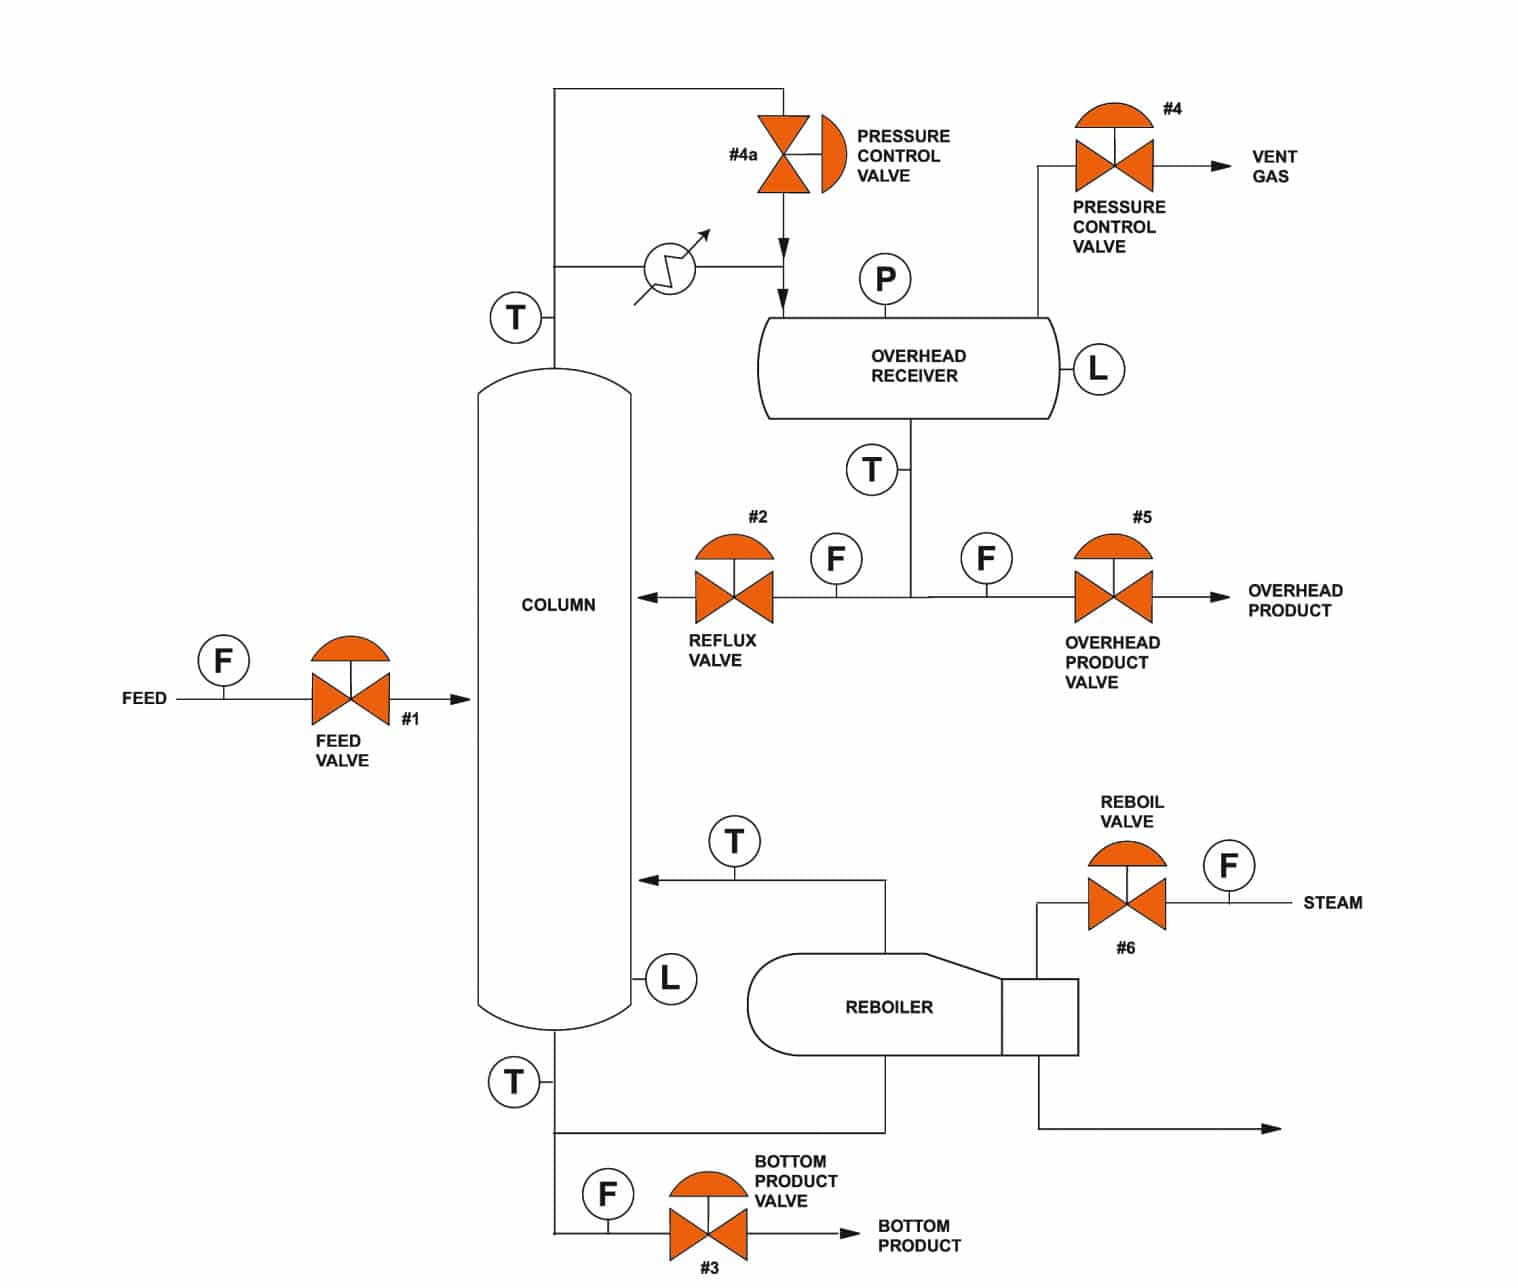 schematic of a basic distillation column